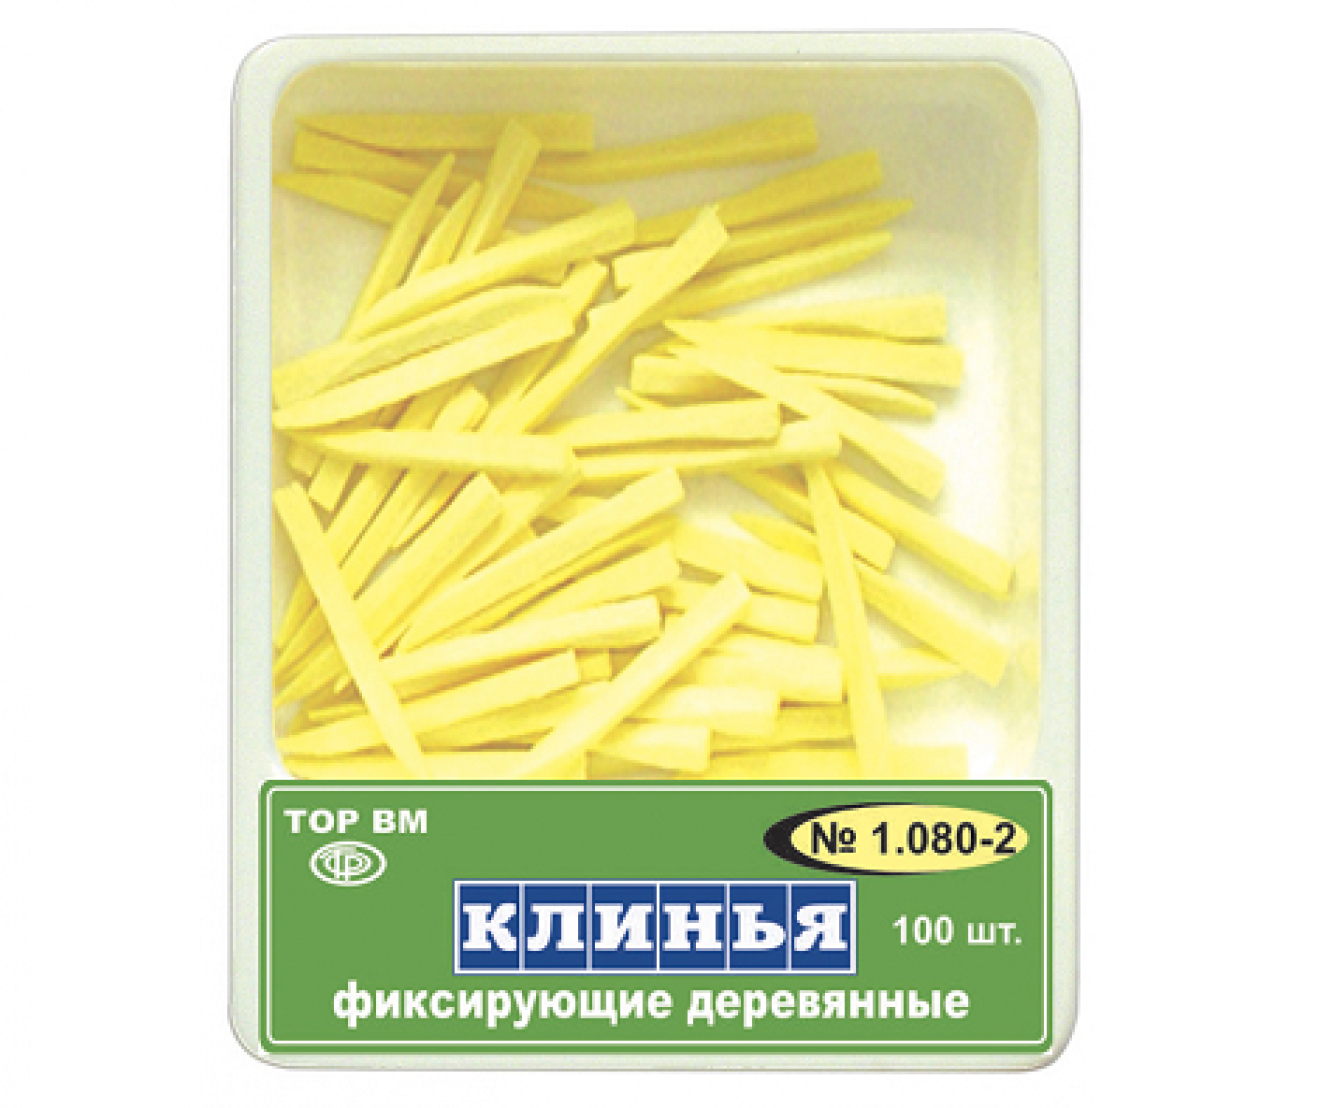 1.080-2 Клинья фиксирующие, деревянные, желтые, ТОР ВМ (Россия)